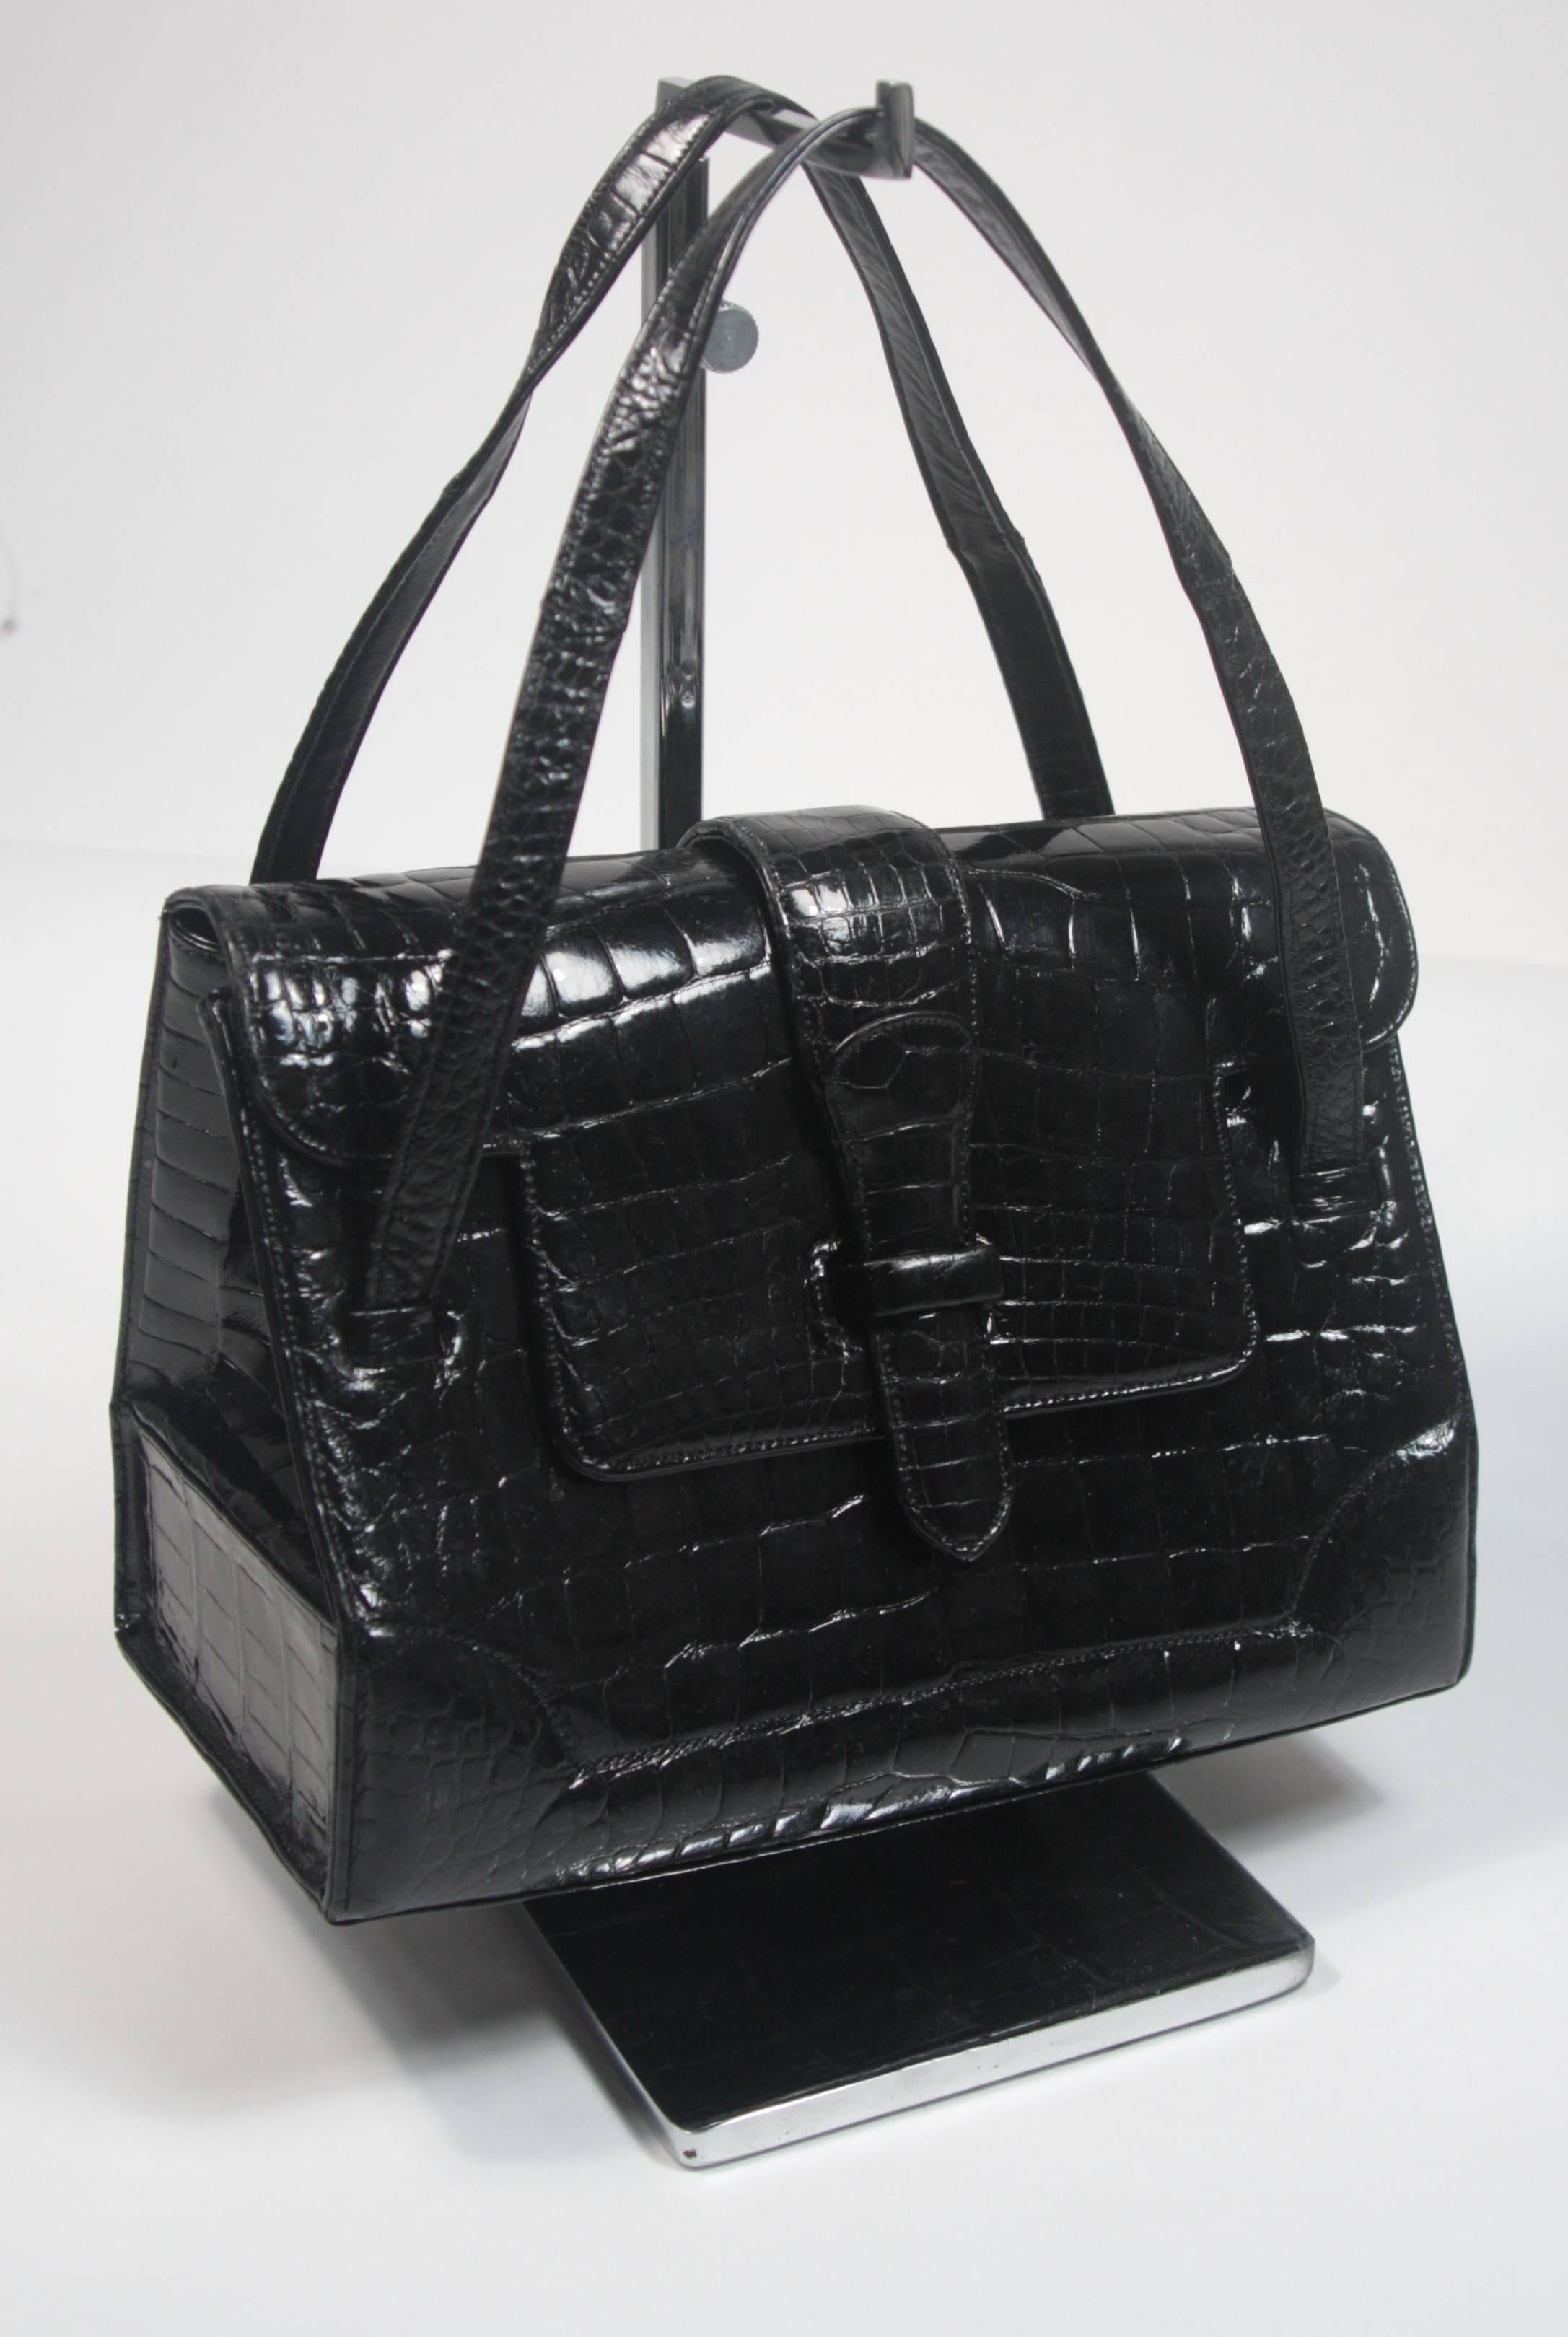 Black Lucille De Paris Structured Alligator Handbag with Double Straps